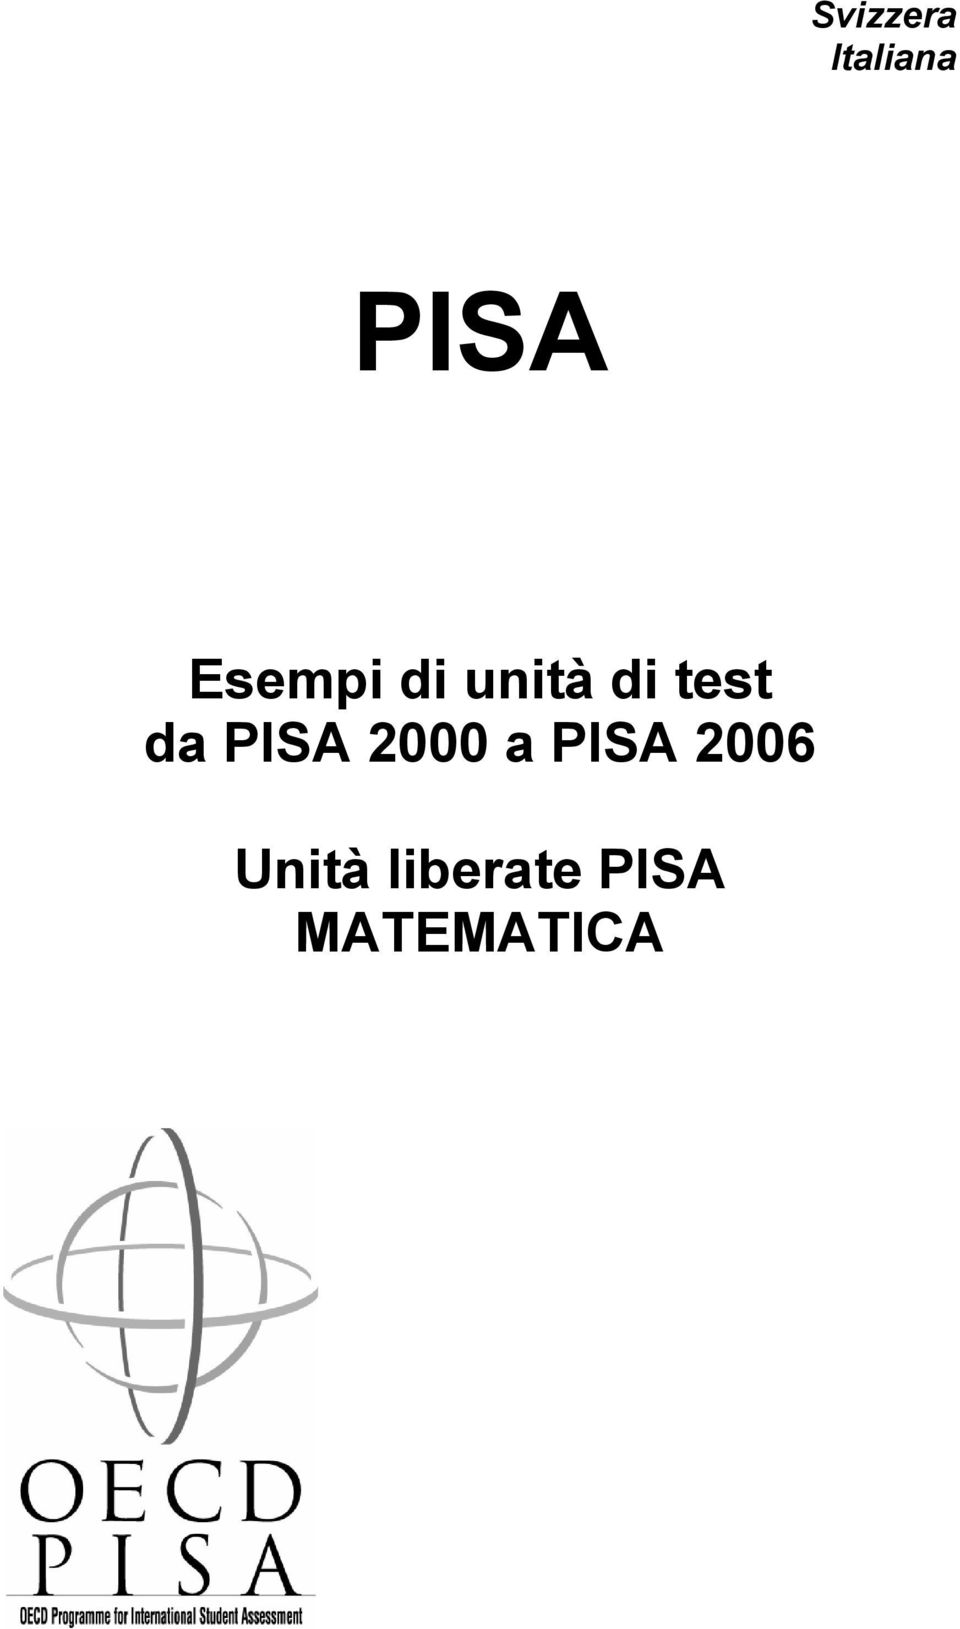 da PISA 2000 a PISA 2006